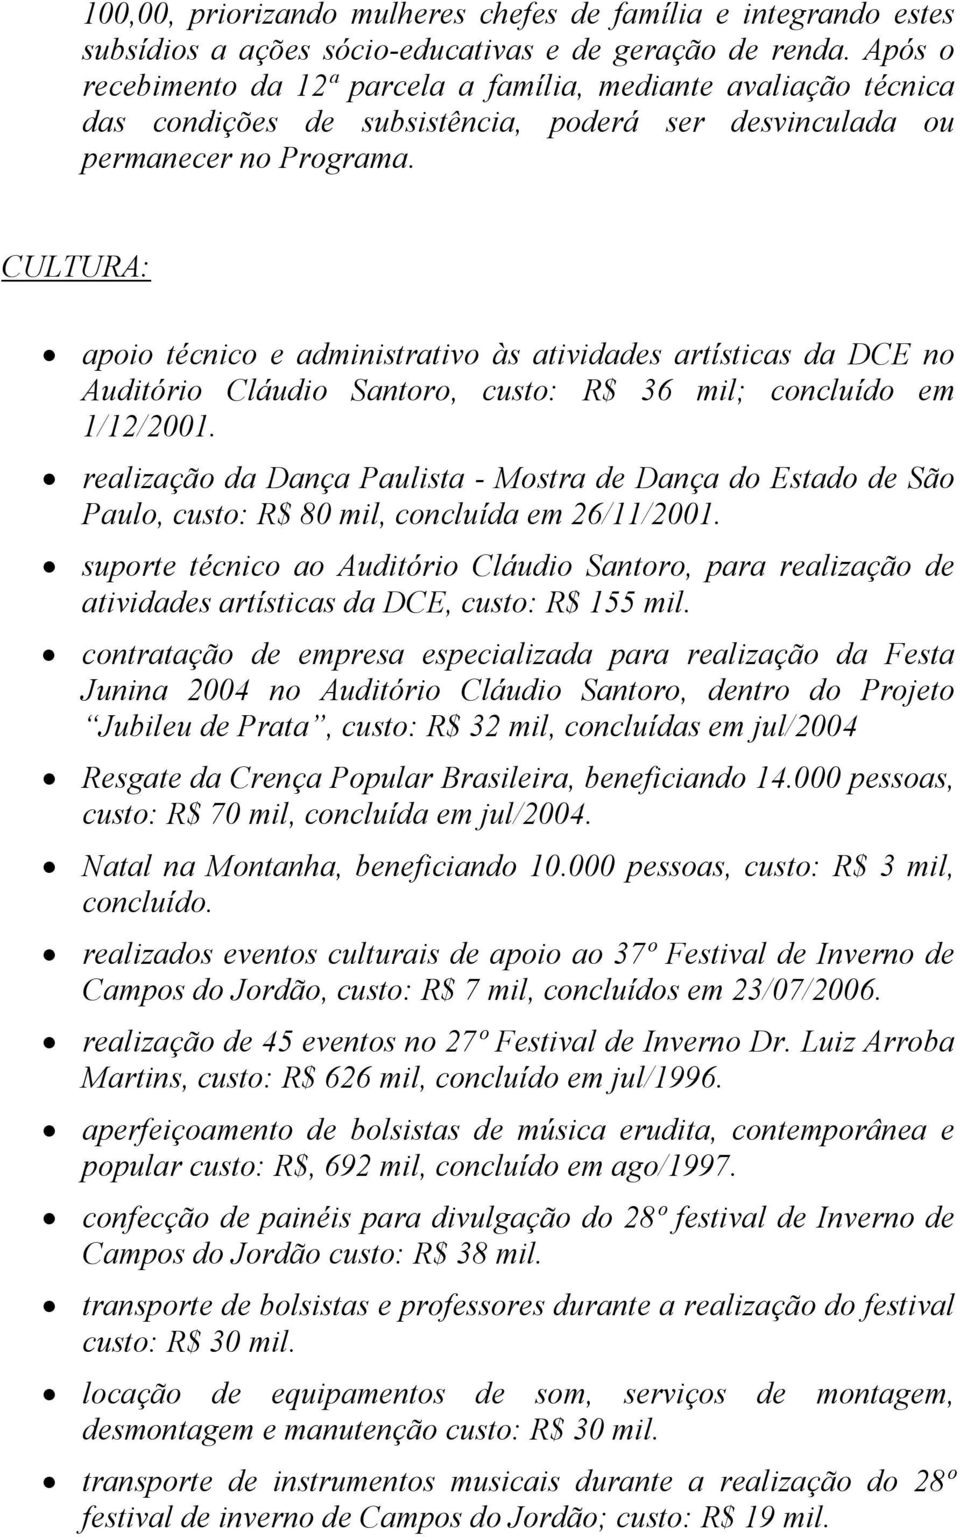 CULTURA: apoio técnico e administrativo às atividades artísticas da DCE no Auditório Cláudio Santoro, custo: R$ 36 mil; concluído em 1/12/2001.